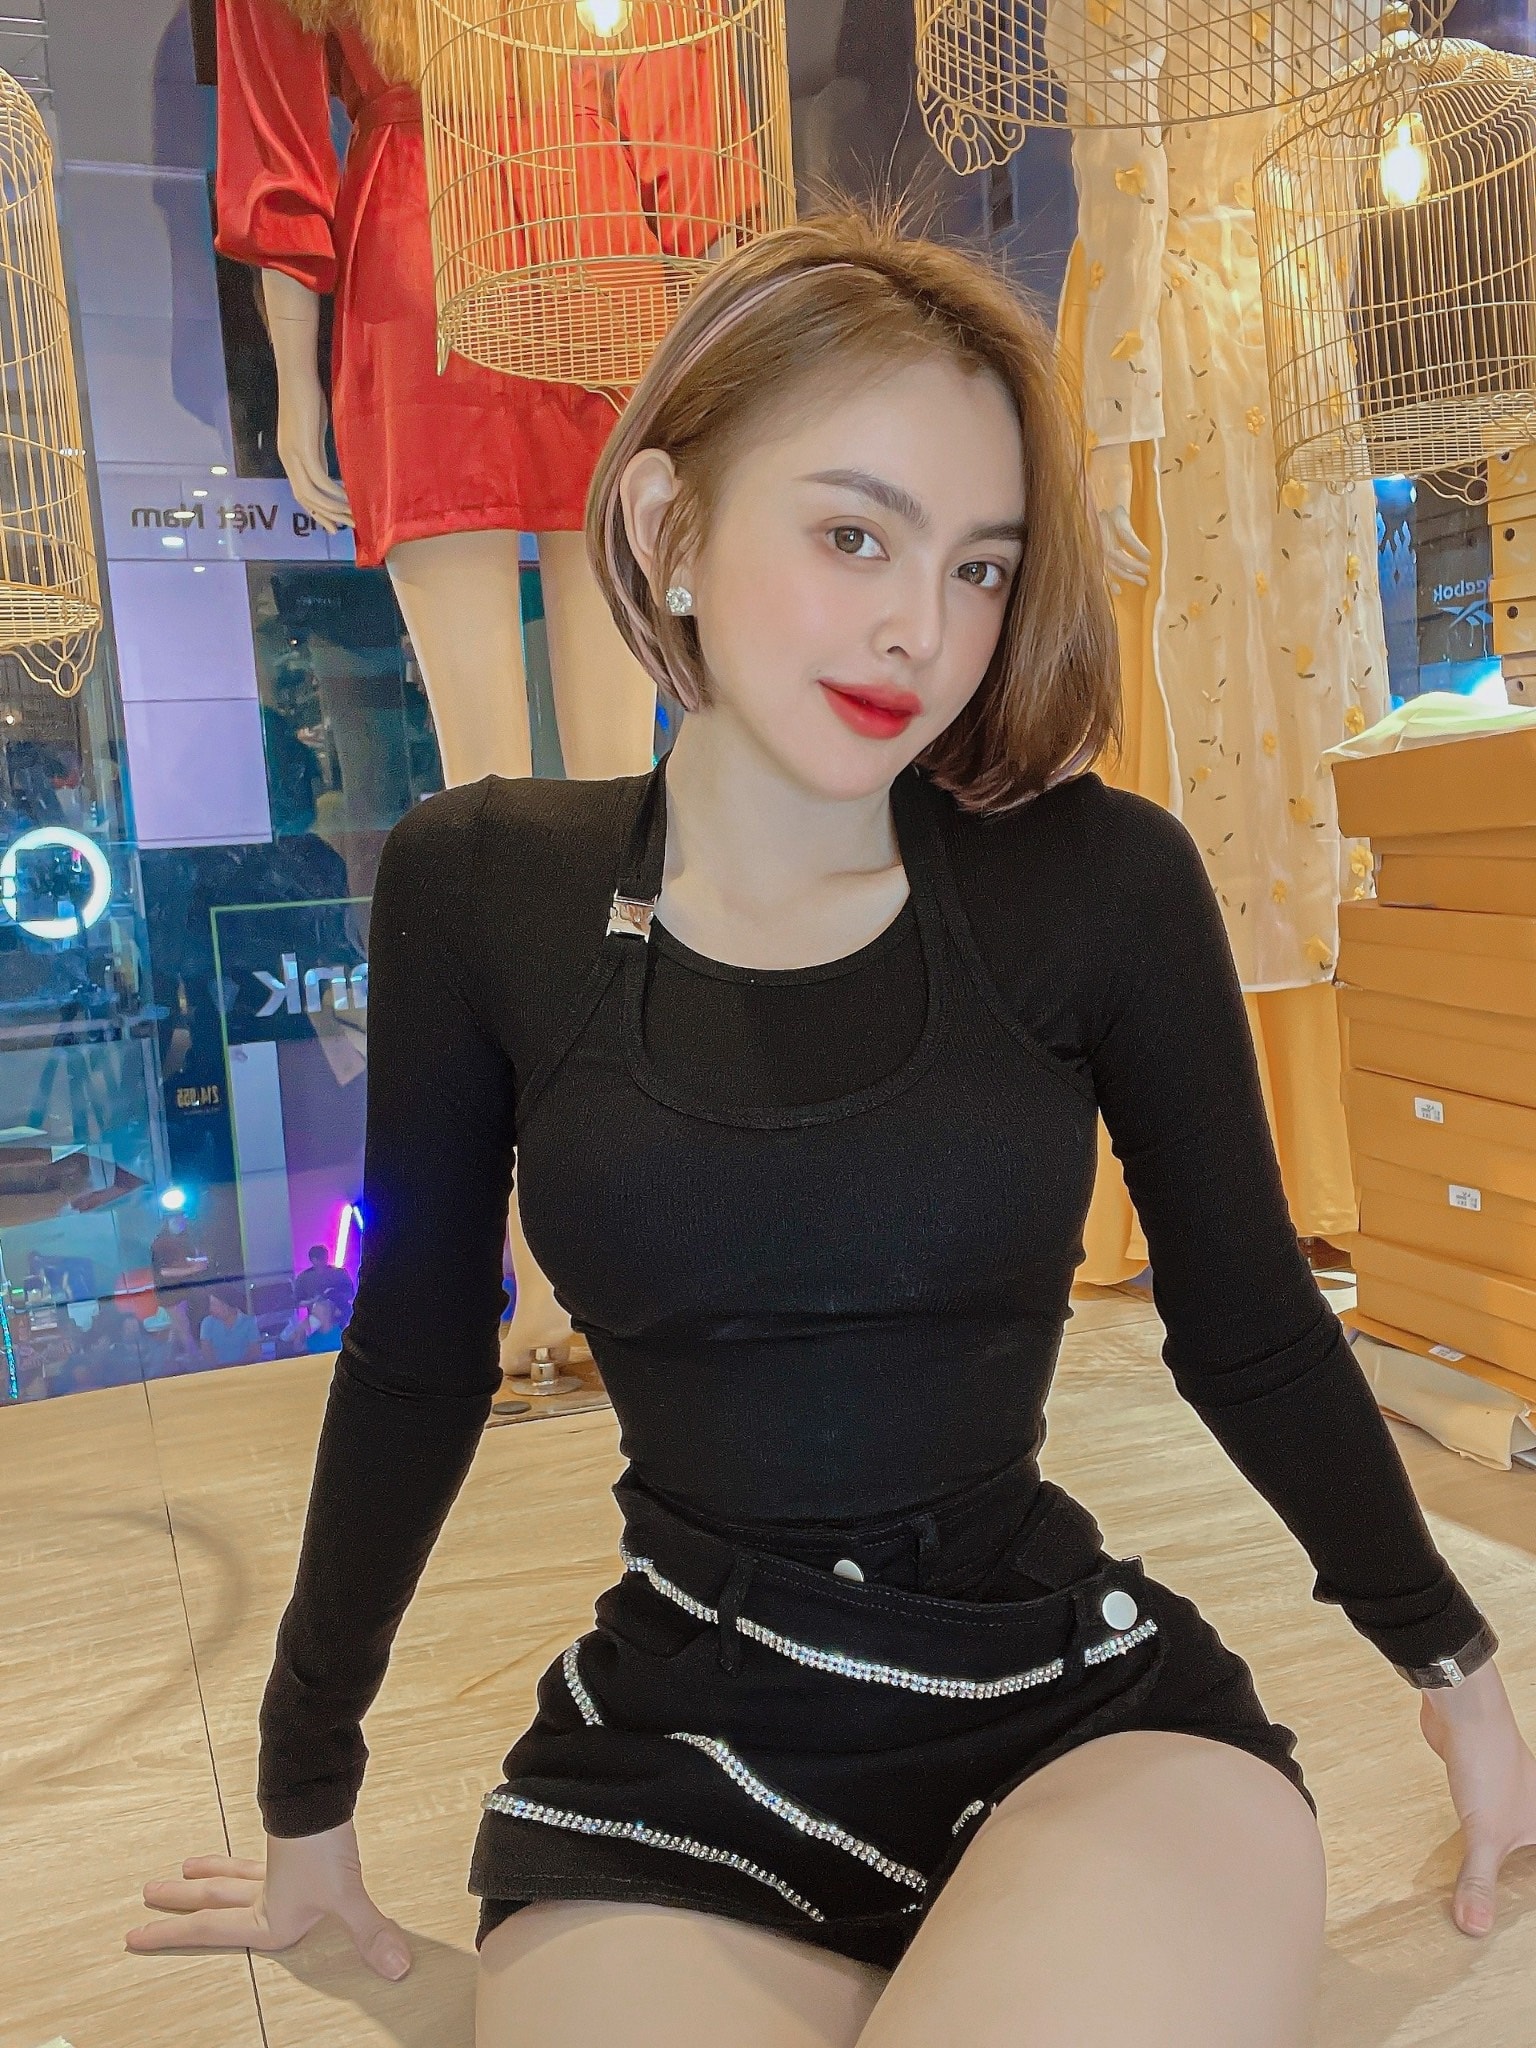 Bên cạnh những chiếc váy nuột nà, các trang phục cá tính cũng được Trang Nemo yêu thích, cô nàng thượng lựa chọn trang phục ôm sát có thiết kế cá tính, cool ngầu.